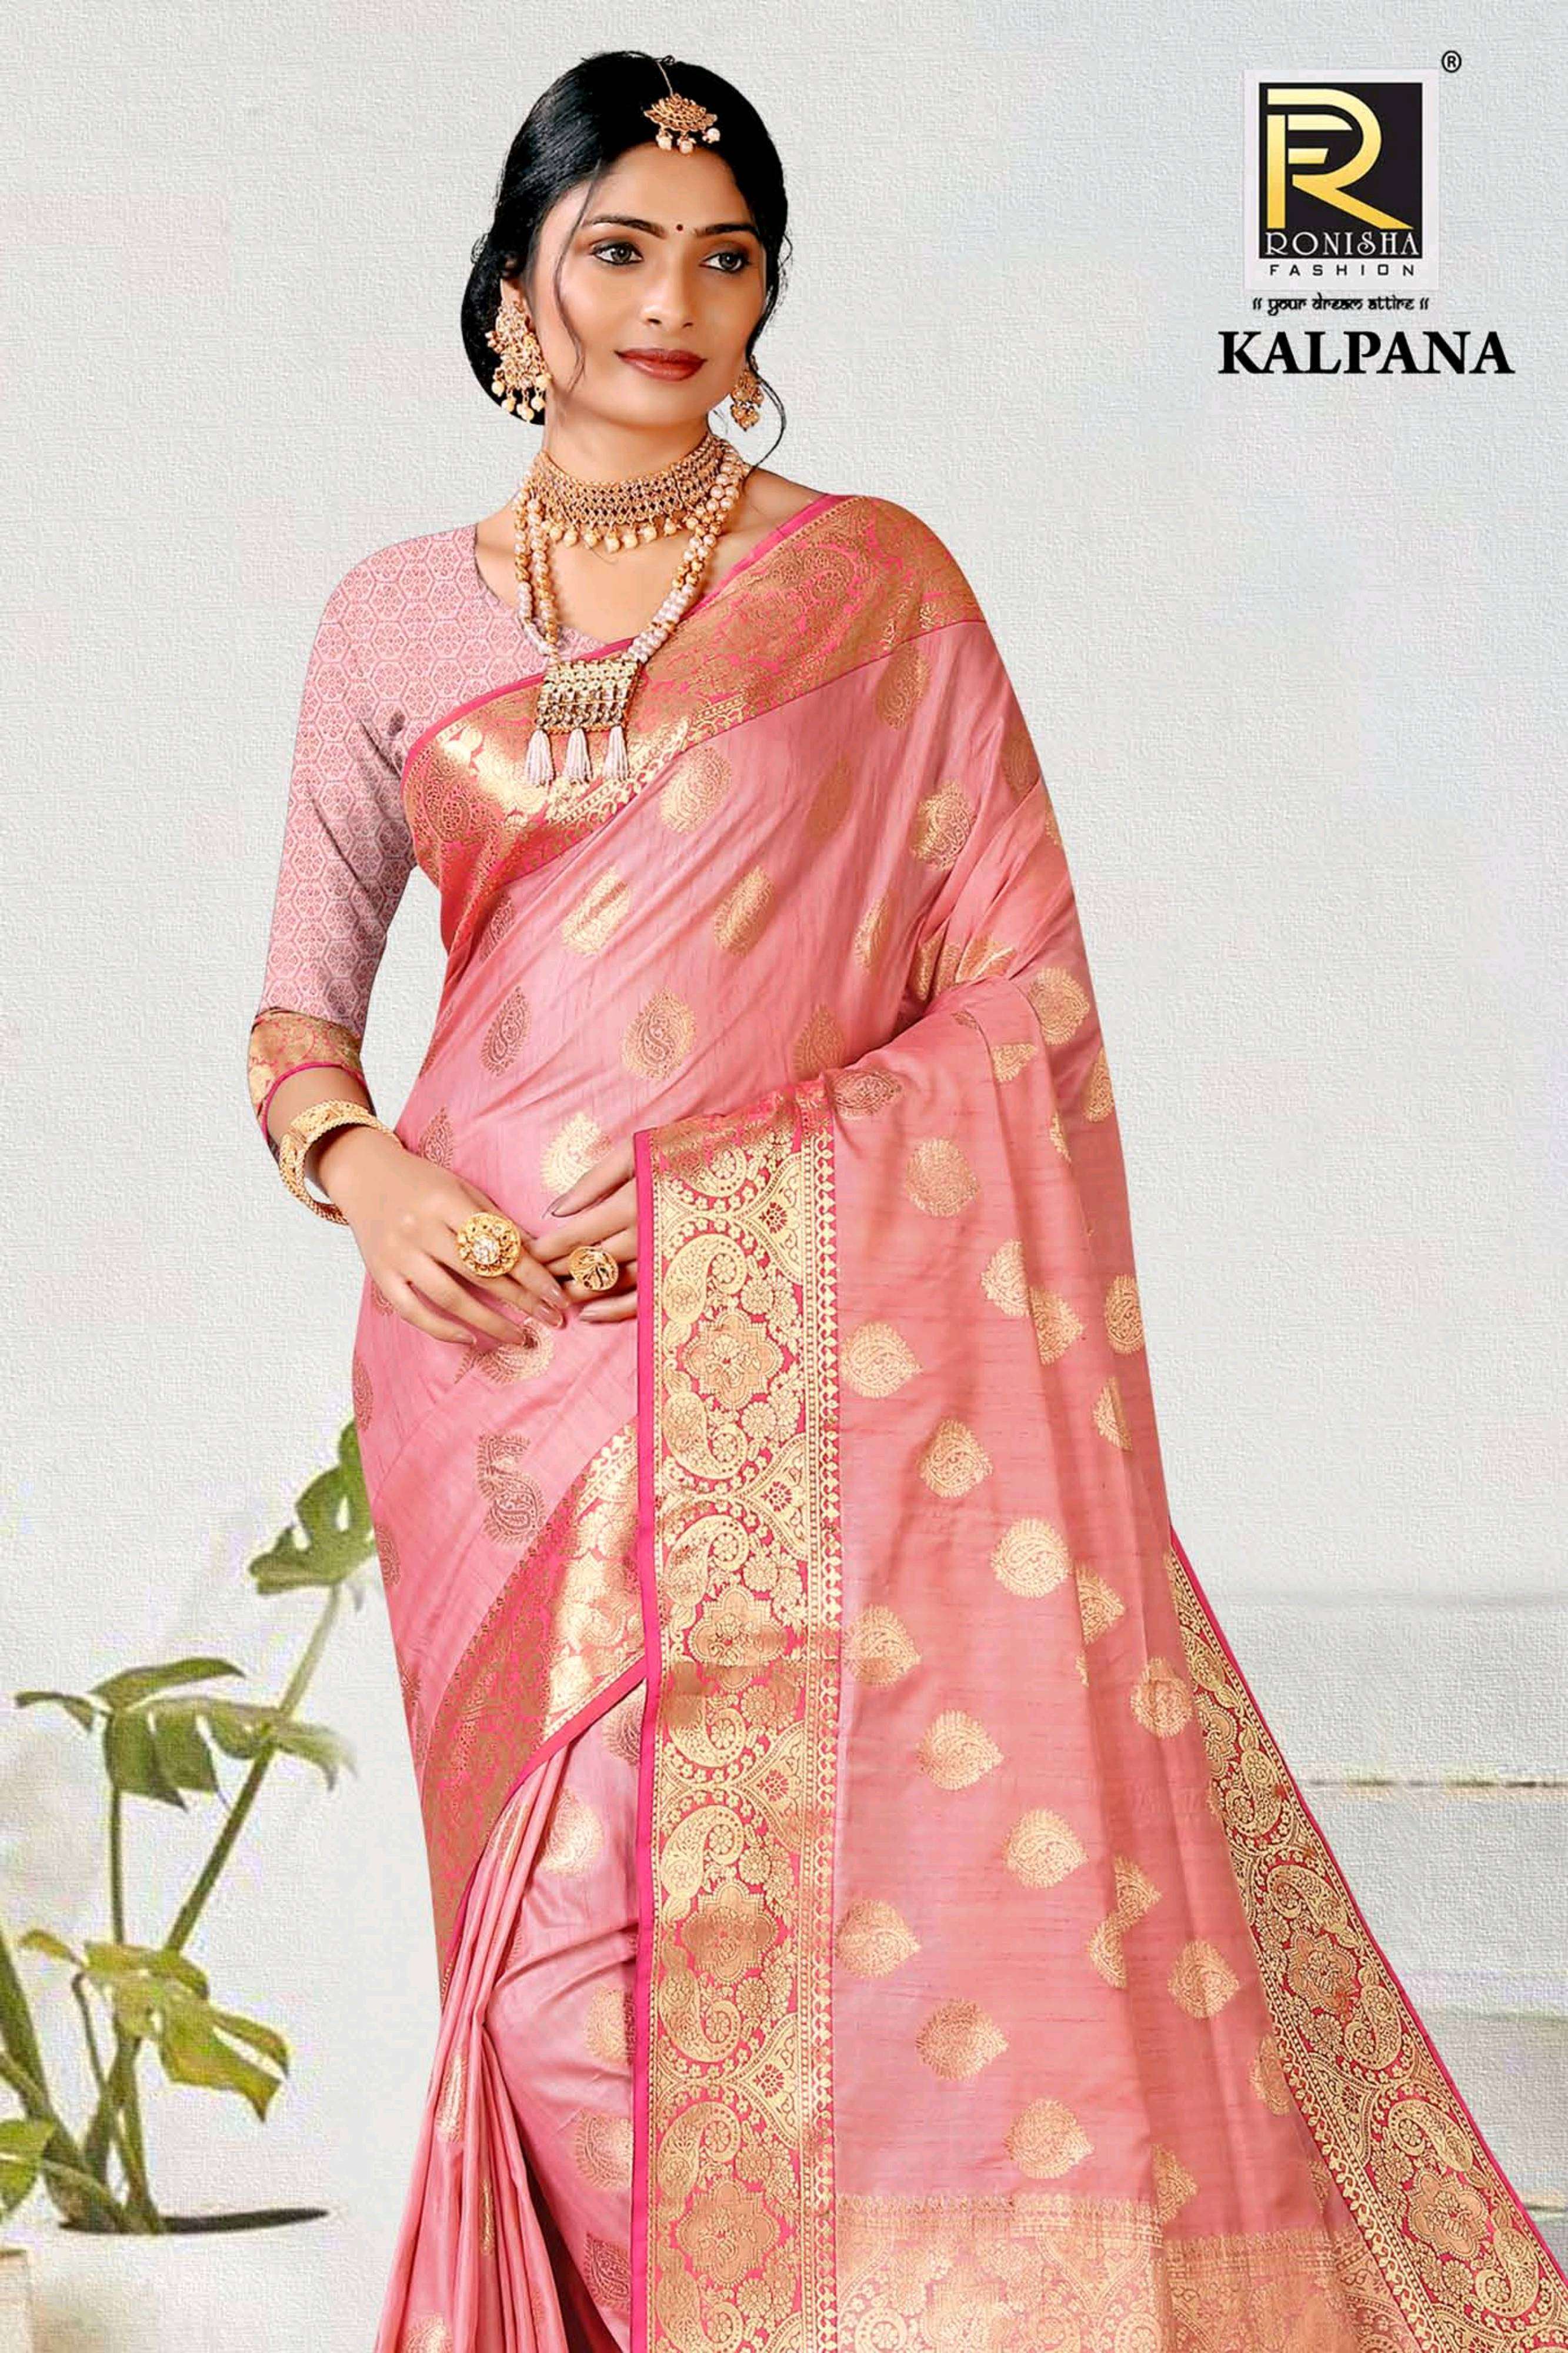  Kalpana by ranjna saree Banarasi silk party saree collection 